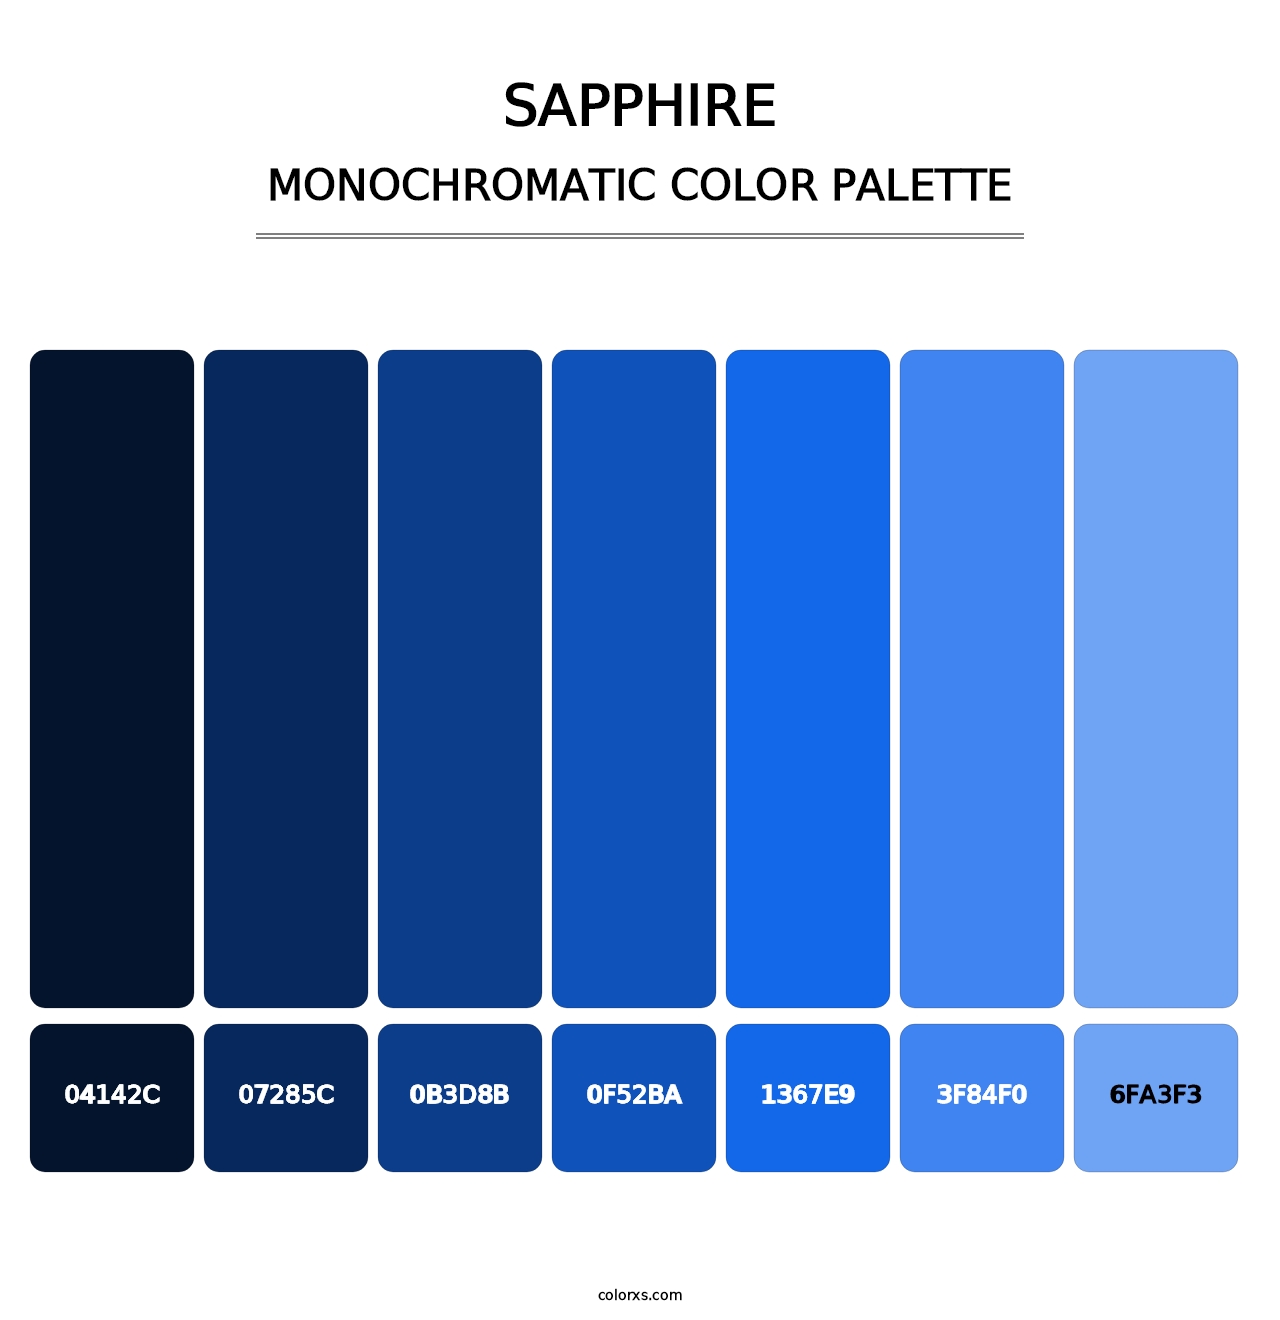 Sapphire - Monochromatic Color Palette